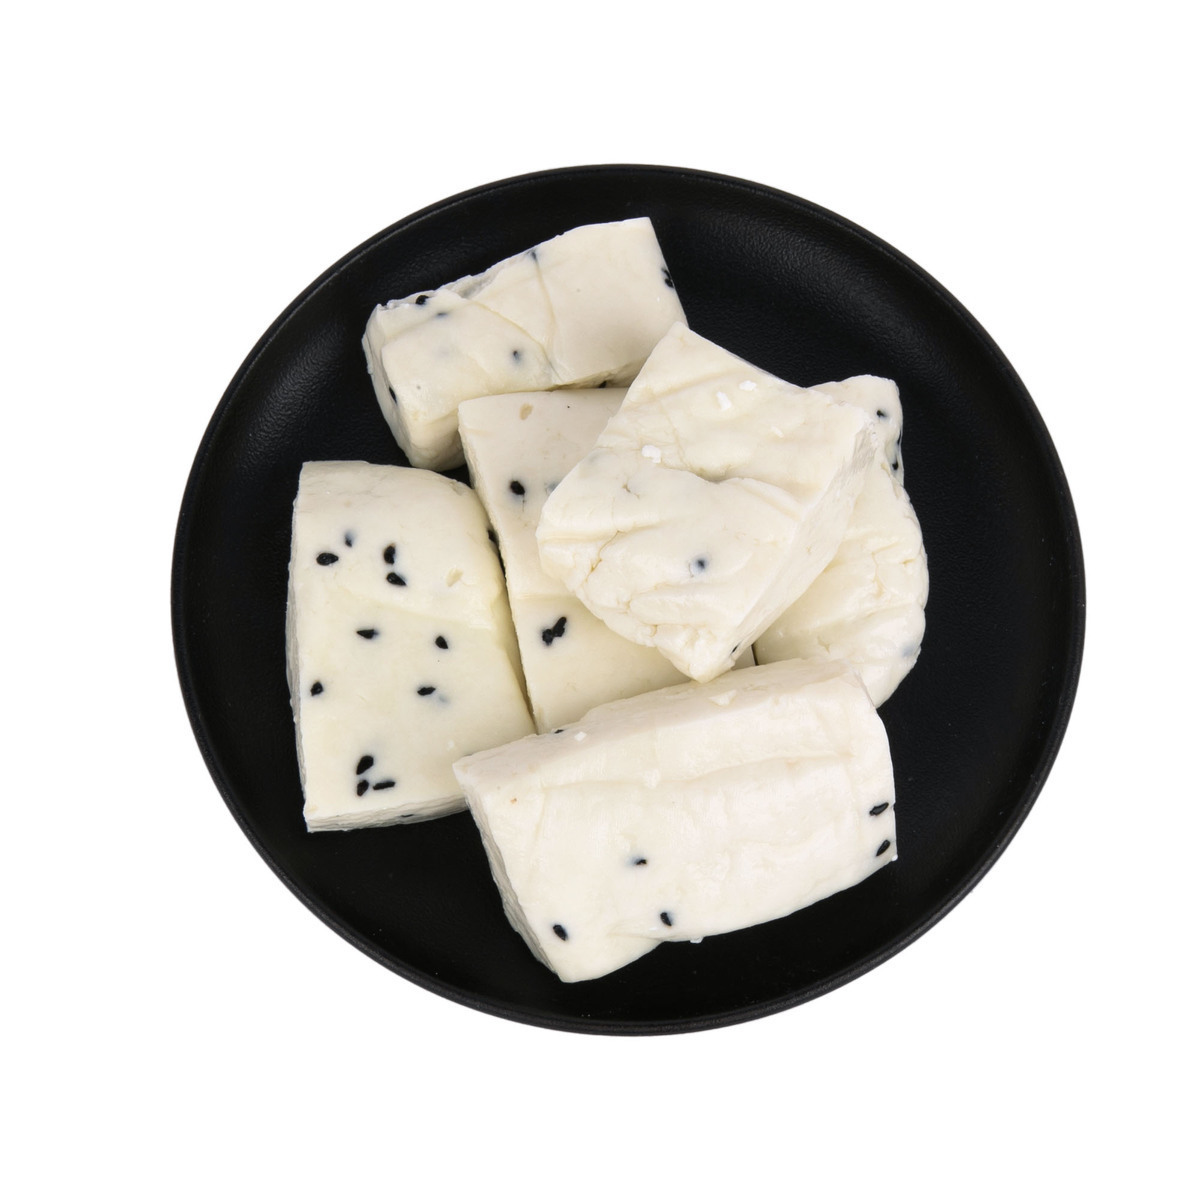 اشتري قم بشراء جبنة نابلسية مع حبة البركة 250 جم Online at Best Price من الموقع - من لولو هايبر ماركت French Cheese في الامارات